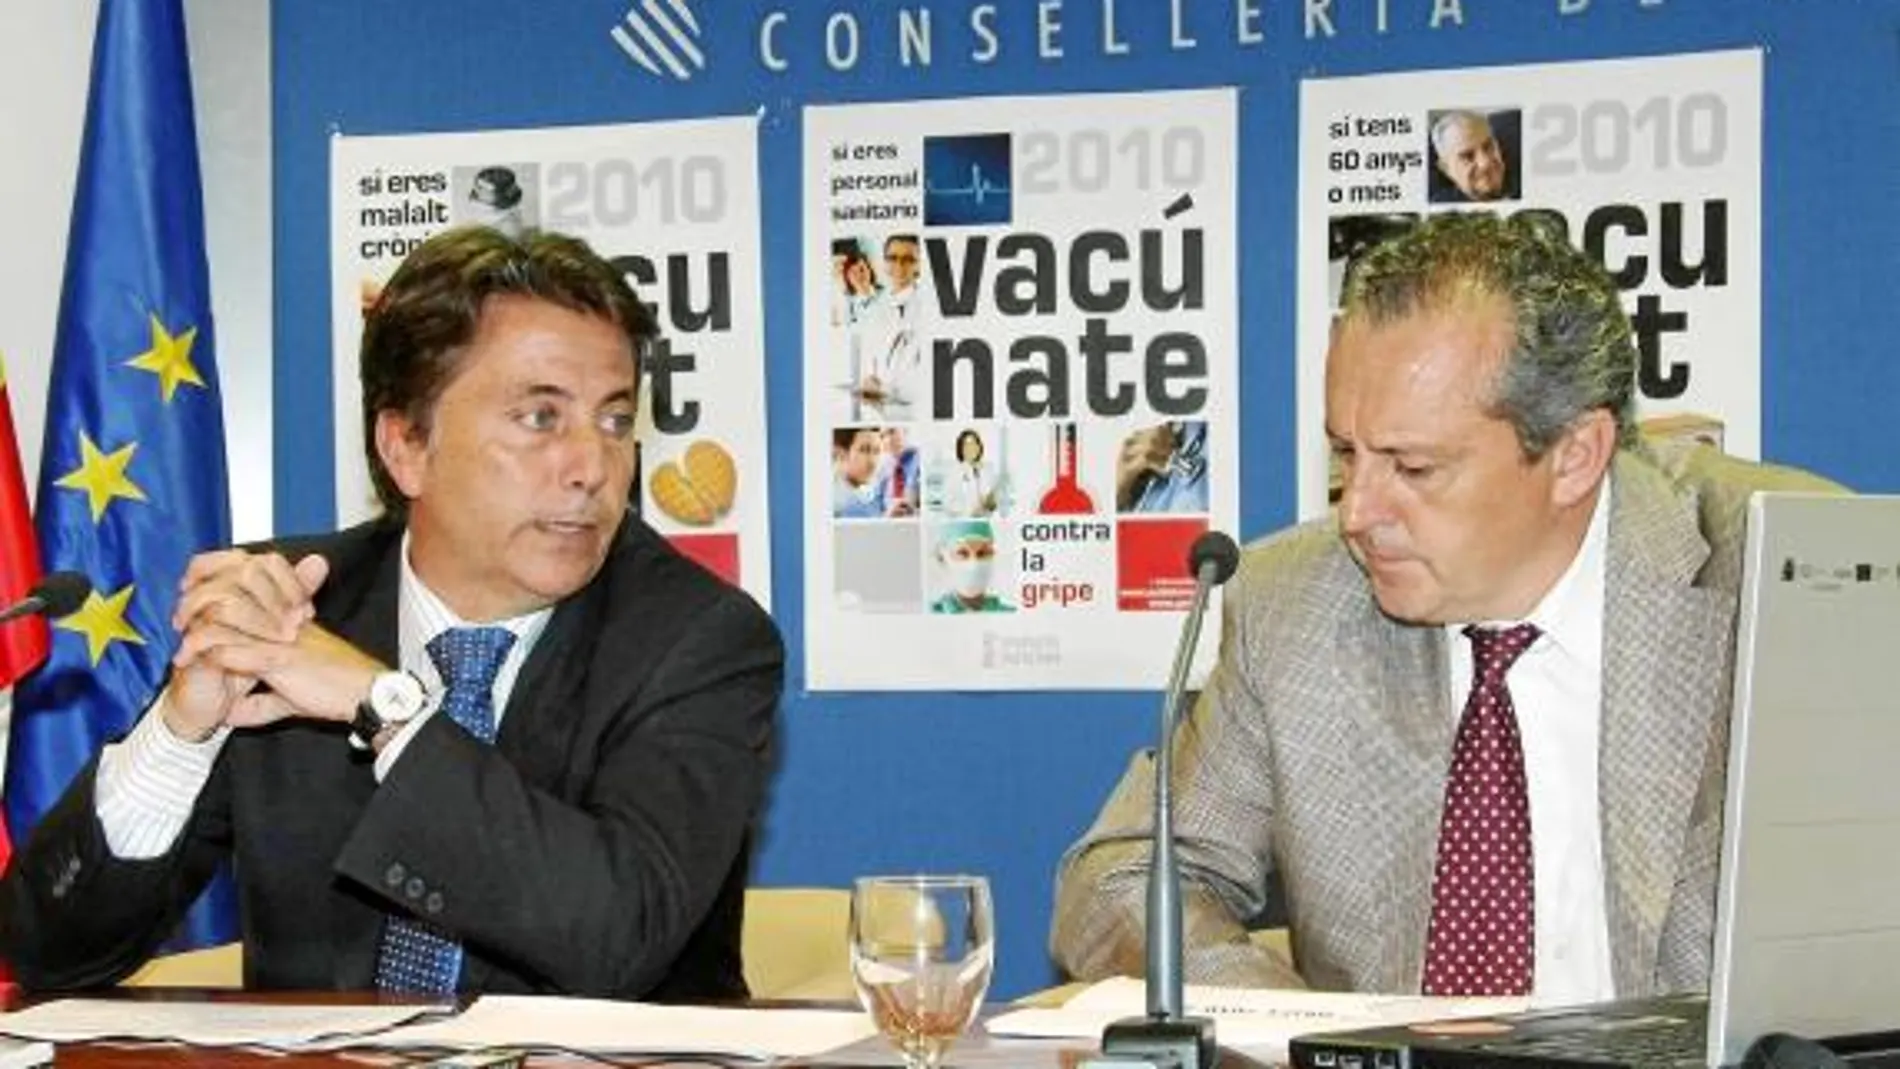 El conseller de Sanidad, Manuel Cervera y el director de Salud Pública, Manuel Escolano, ayer en la presentación de la campaña contra la gripe